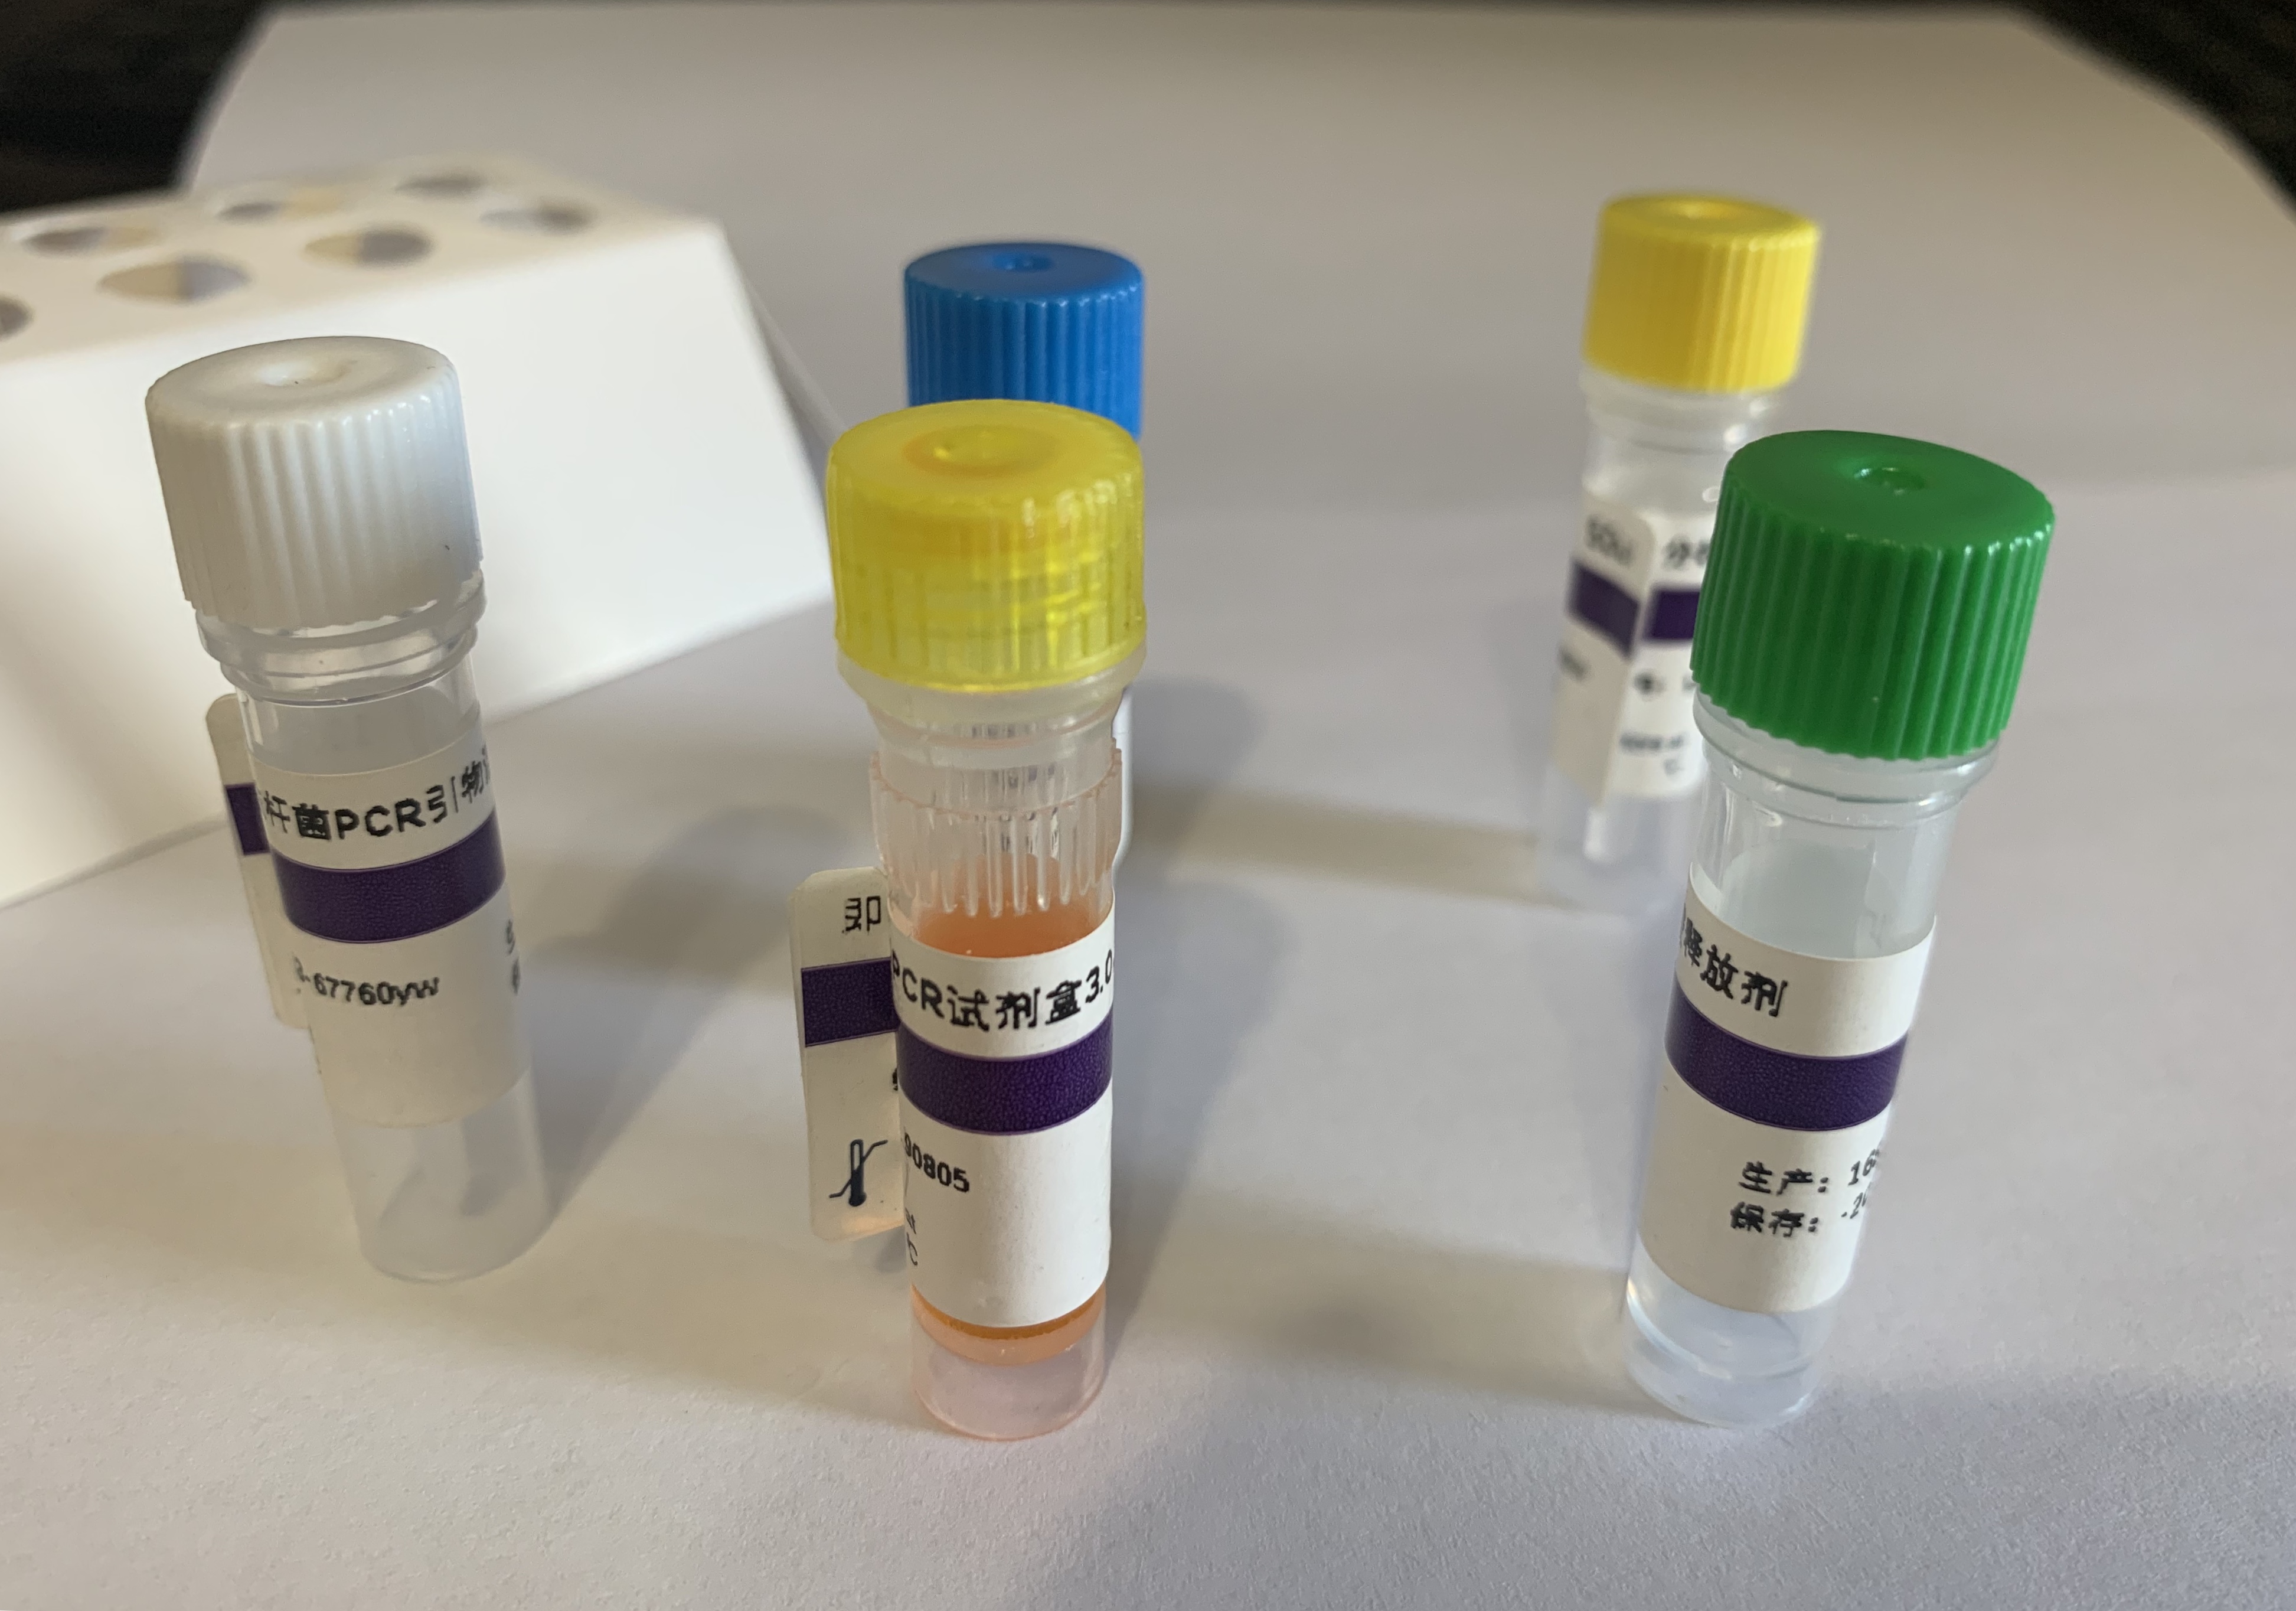 转基因元件NOS启动子PCR试剂盒